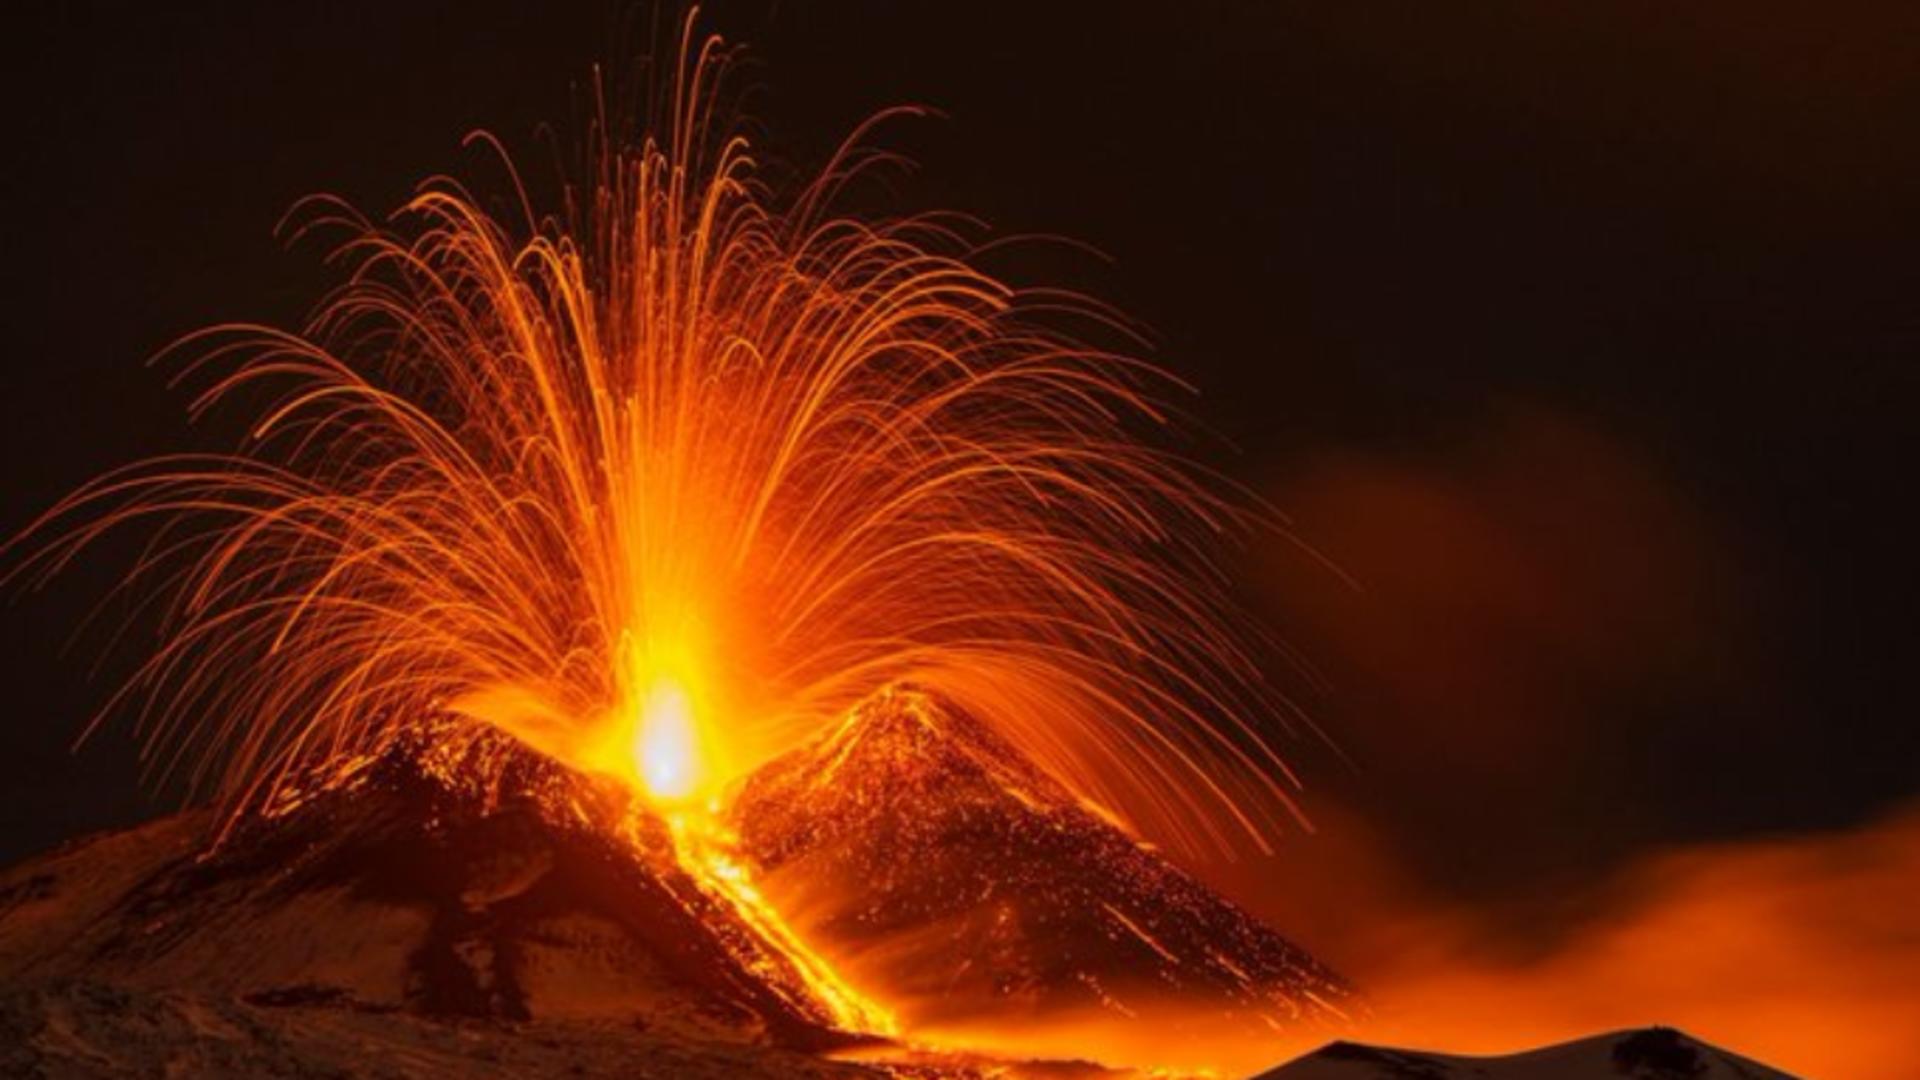 Cel mai mare vulcan activ a erupt din nou: Lavă fierbinte revărsată pe zăpadă și fum dens – Imagini spectaculoase